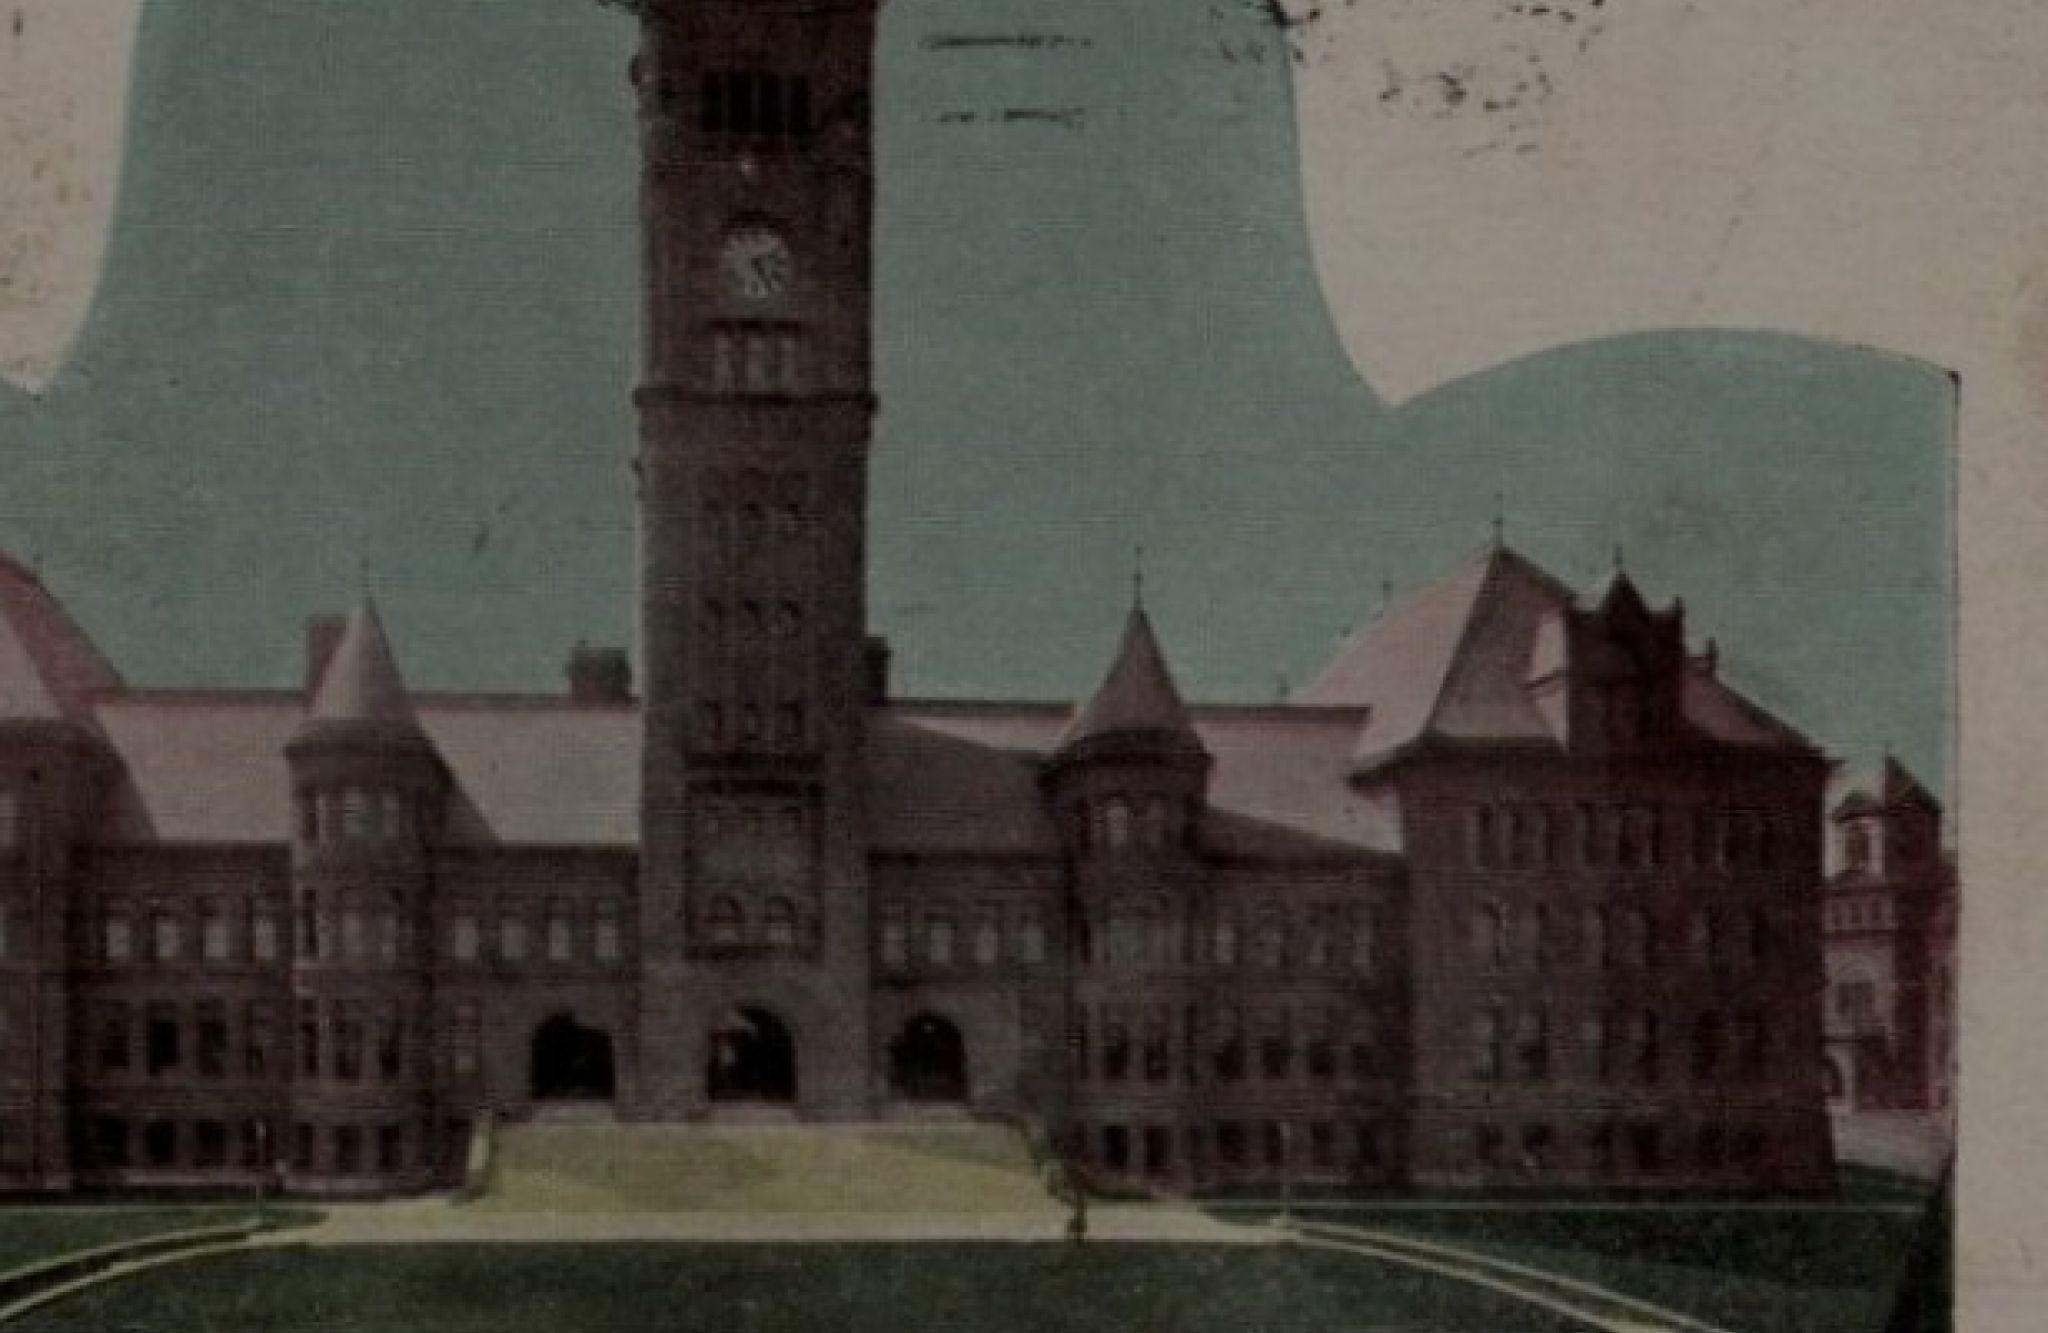 Vintage postcard artwork of Duluth Central High School